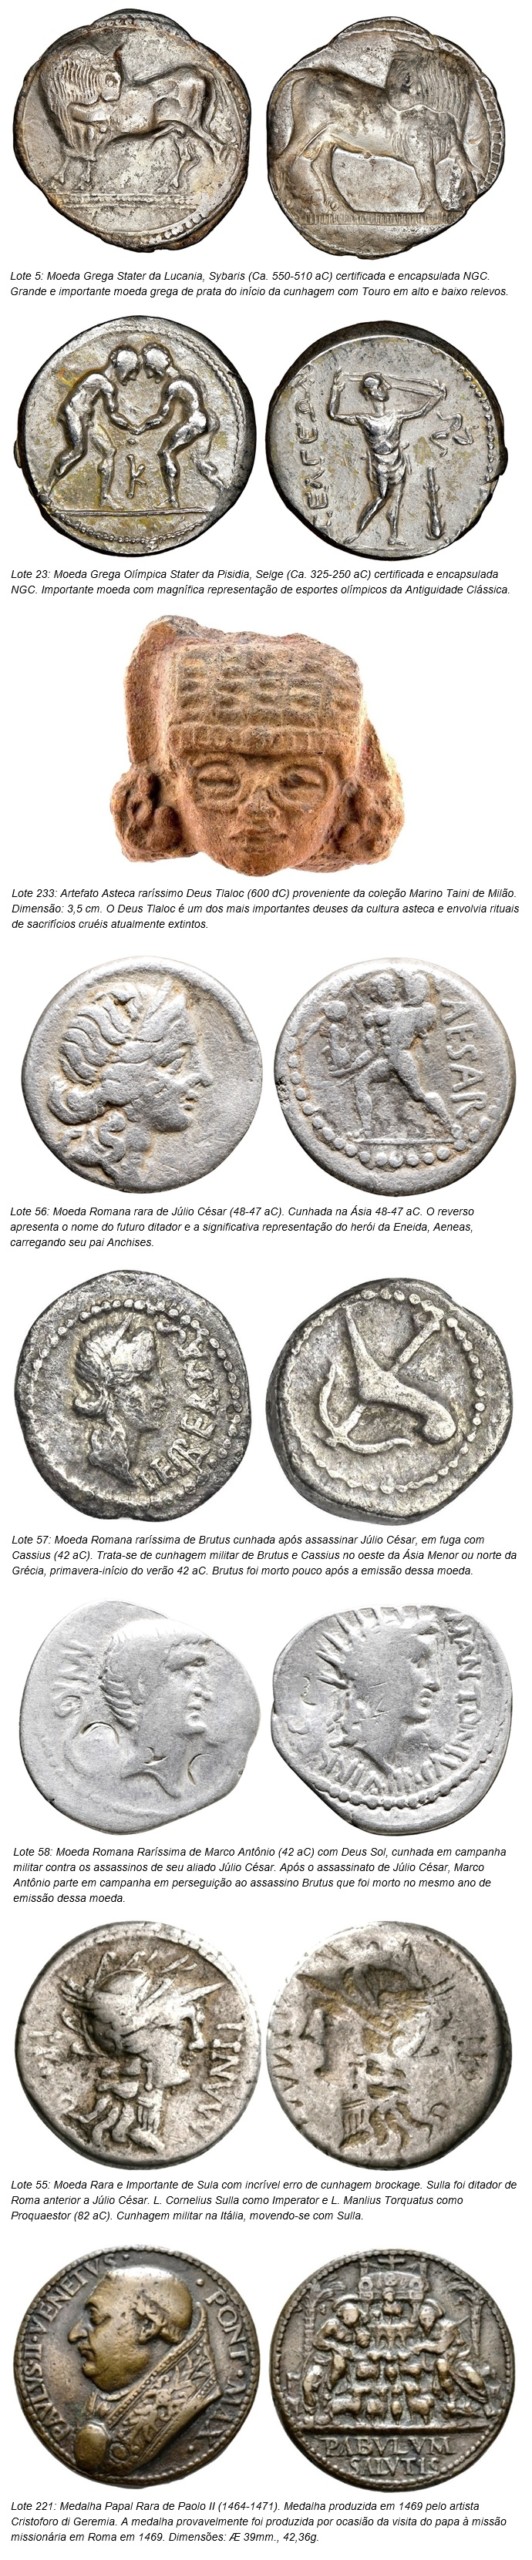 مزادات Flávia Cardoso Soares: 5º مزاد عملات كوناتوس للعملات المعدنية والتحف من العصور الكلاسيكية القديمة (اليونانية, الرومان والبيزنطيين), ويسلط الضوء على. الكشف.